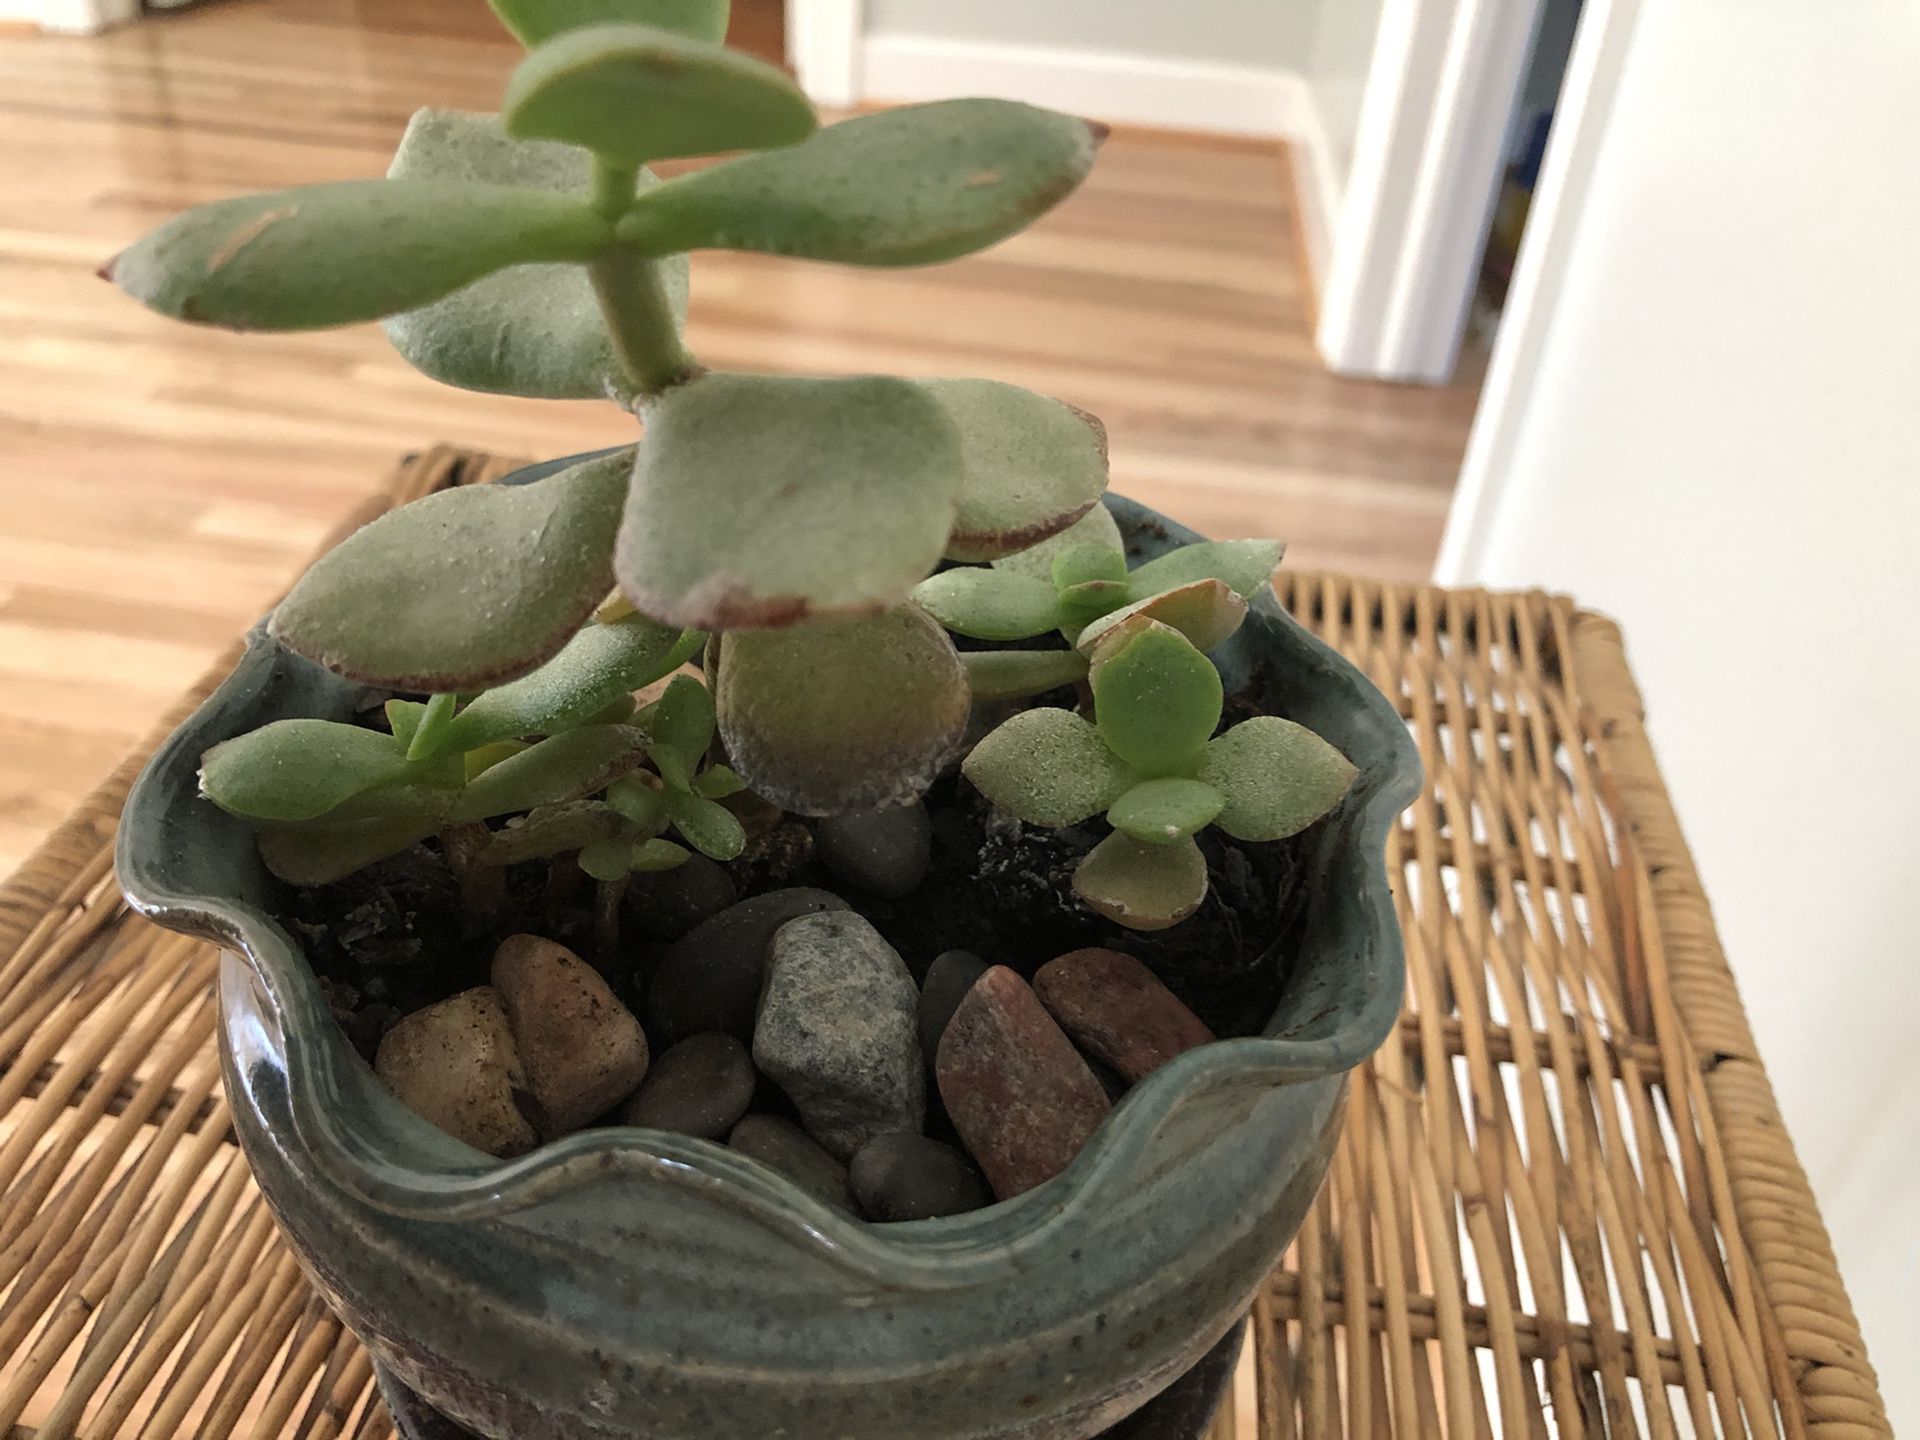 Succulent live plant in a beautiful ceramic pot